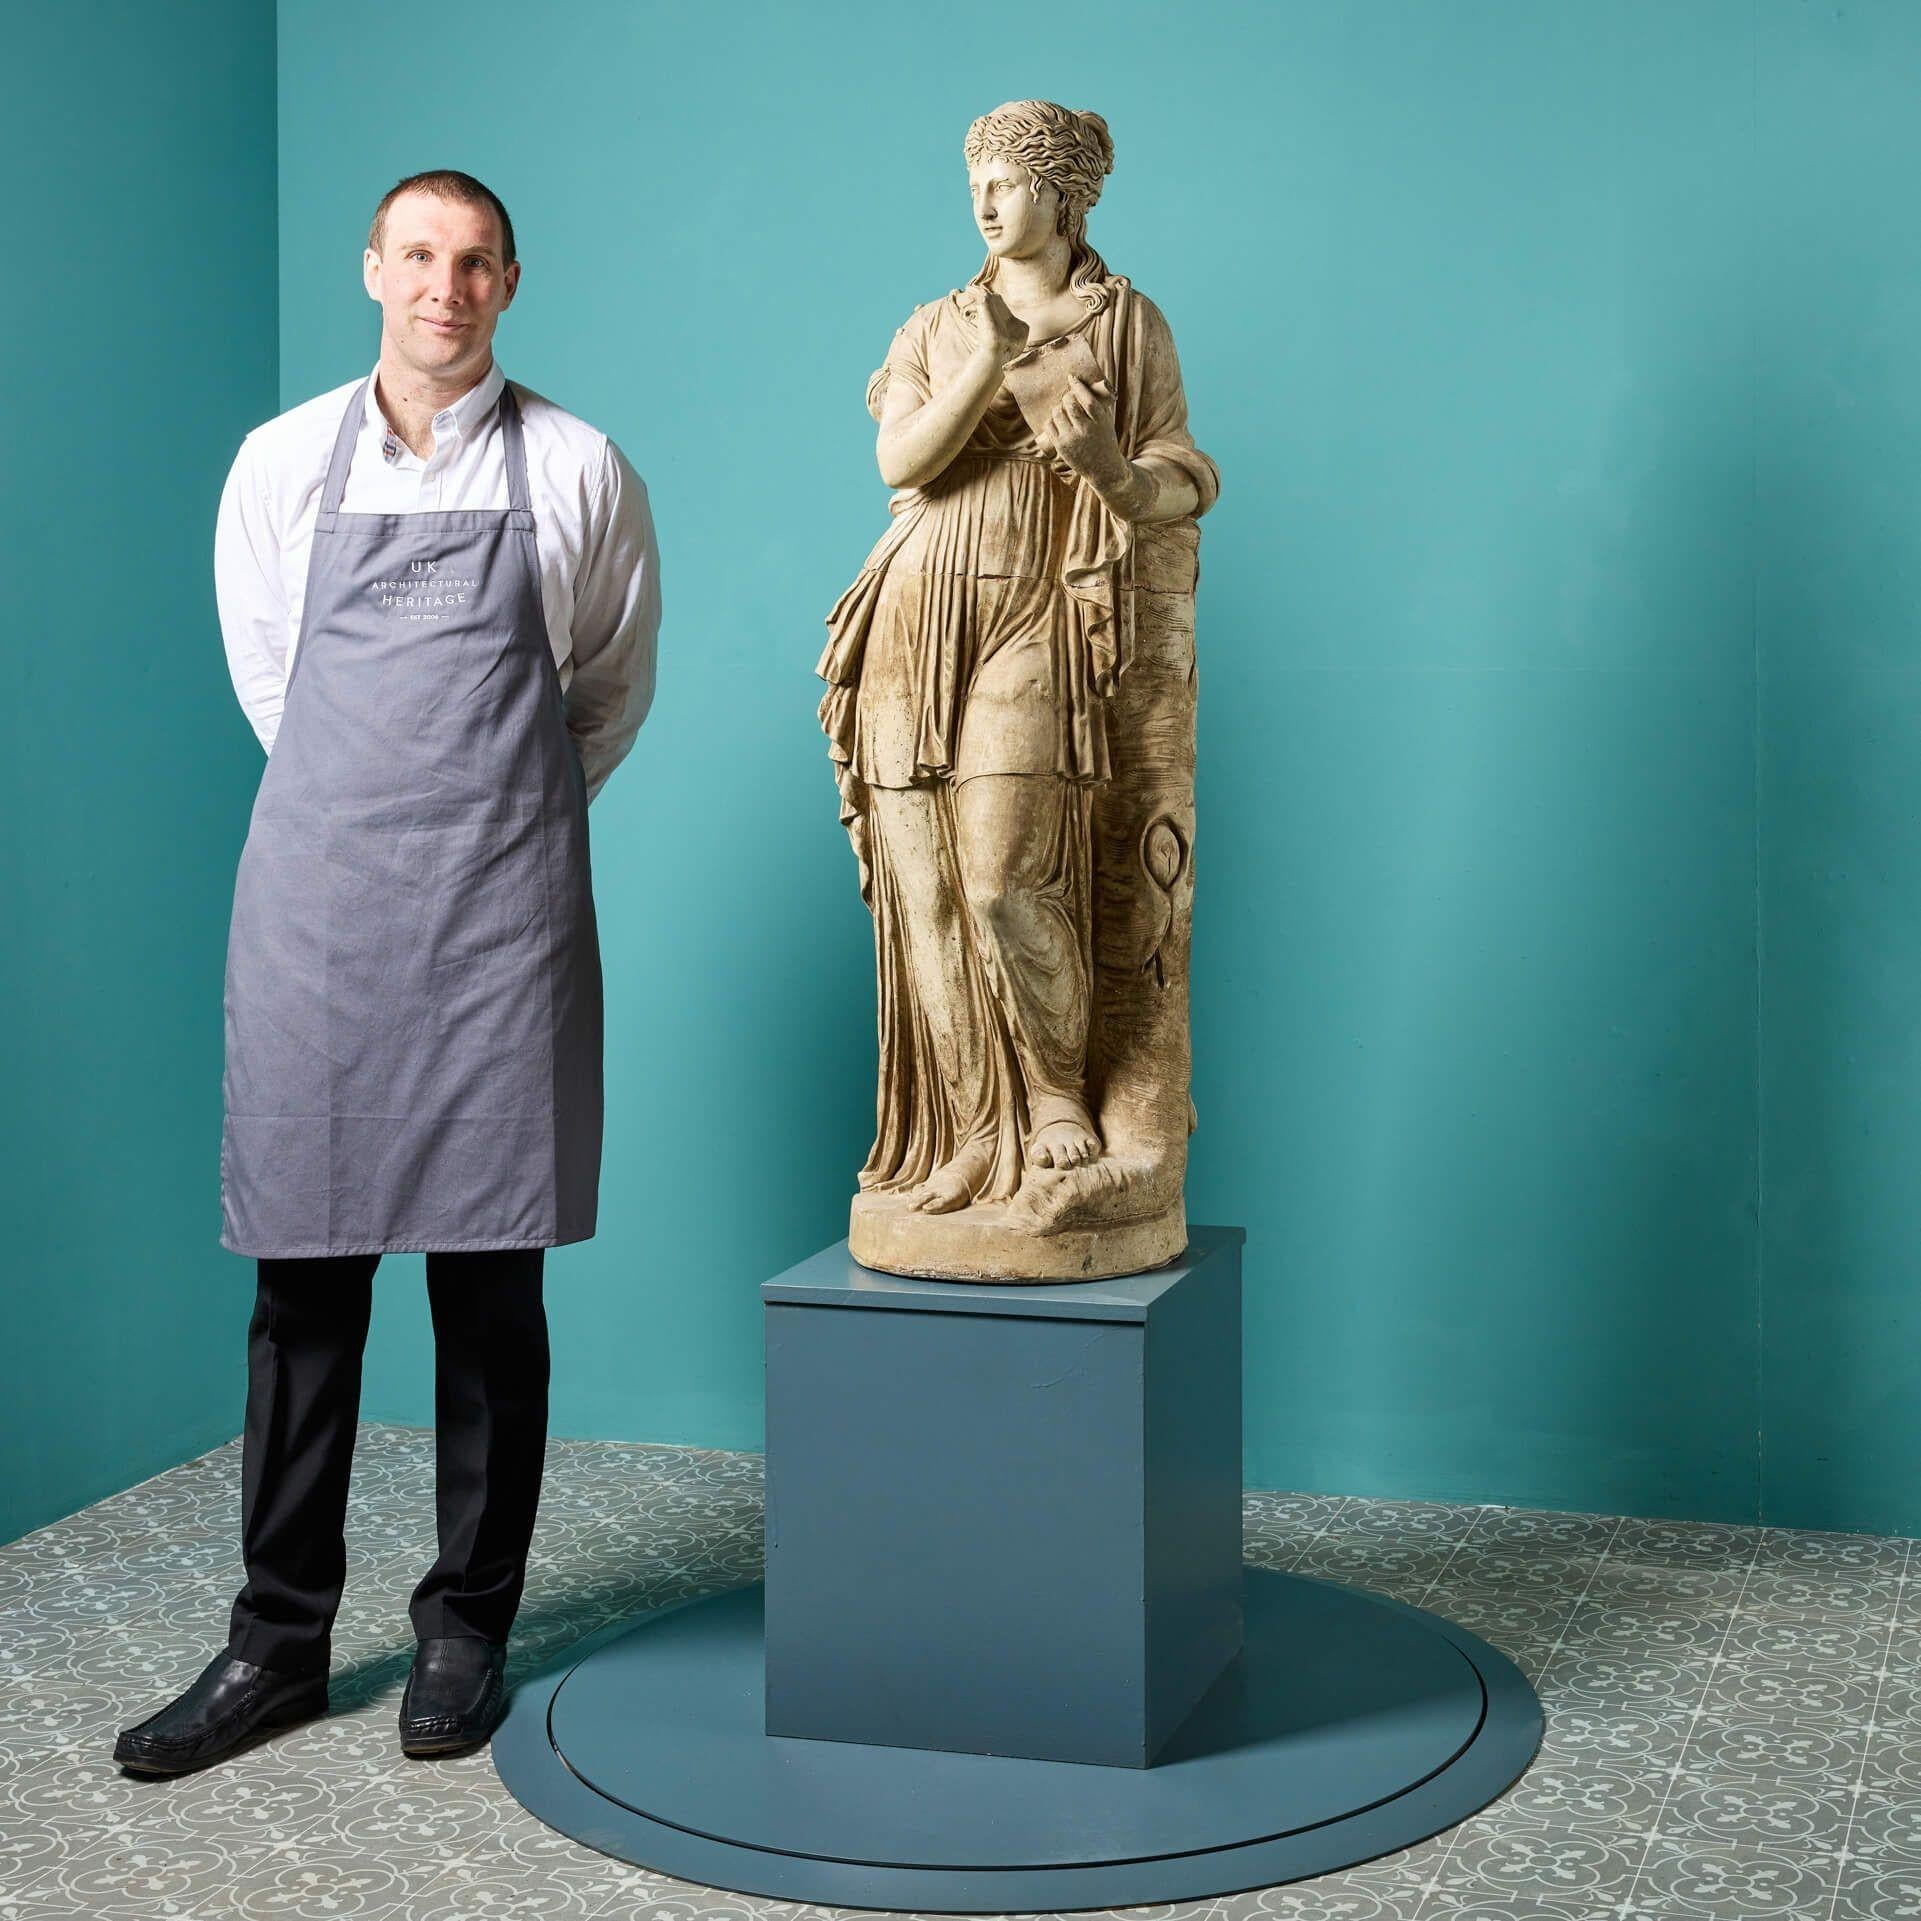 Eine antike französische Terrakotta-Statue in Dreiviertel-Lebensgröße von Clio, einer der 9 Musen der griechischen Mythologie, aus dem frühen 20. Jahrhundert. Clio, die Göttin der Geschichte, lehnt an einem Baumstumpf, ist in einen weiten Stoff